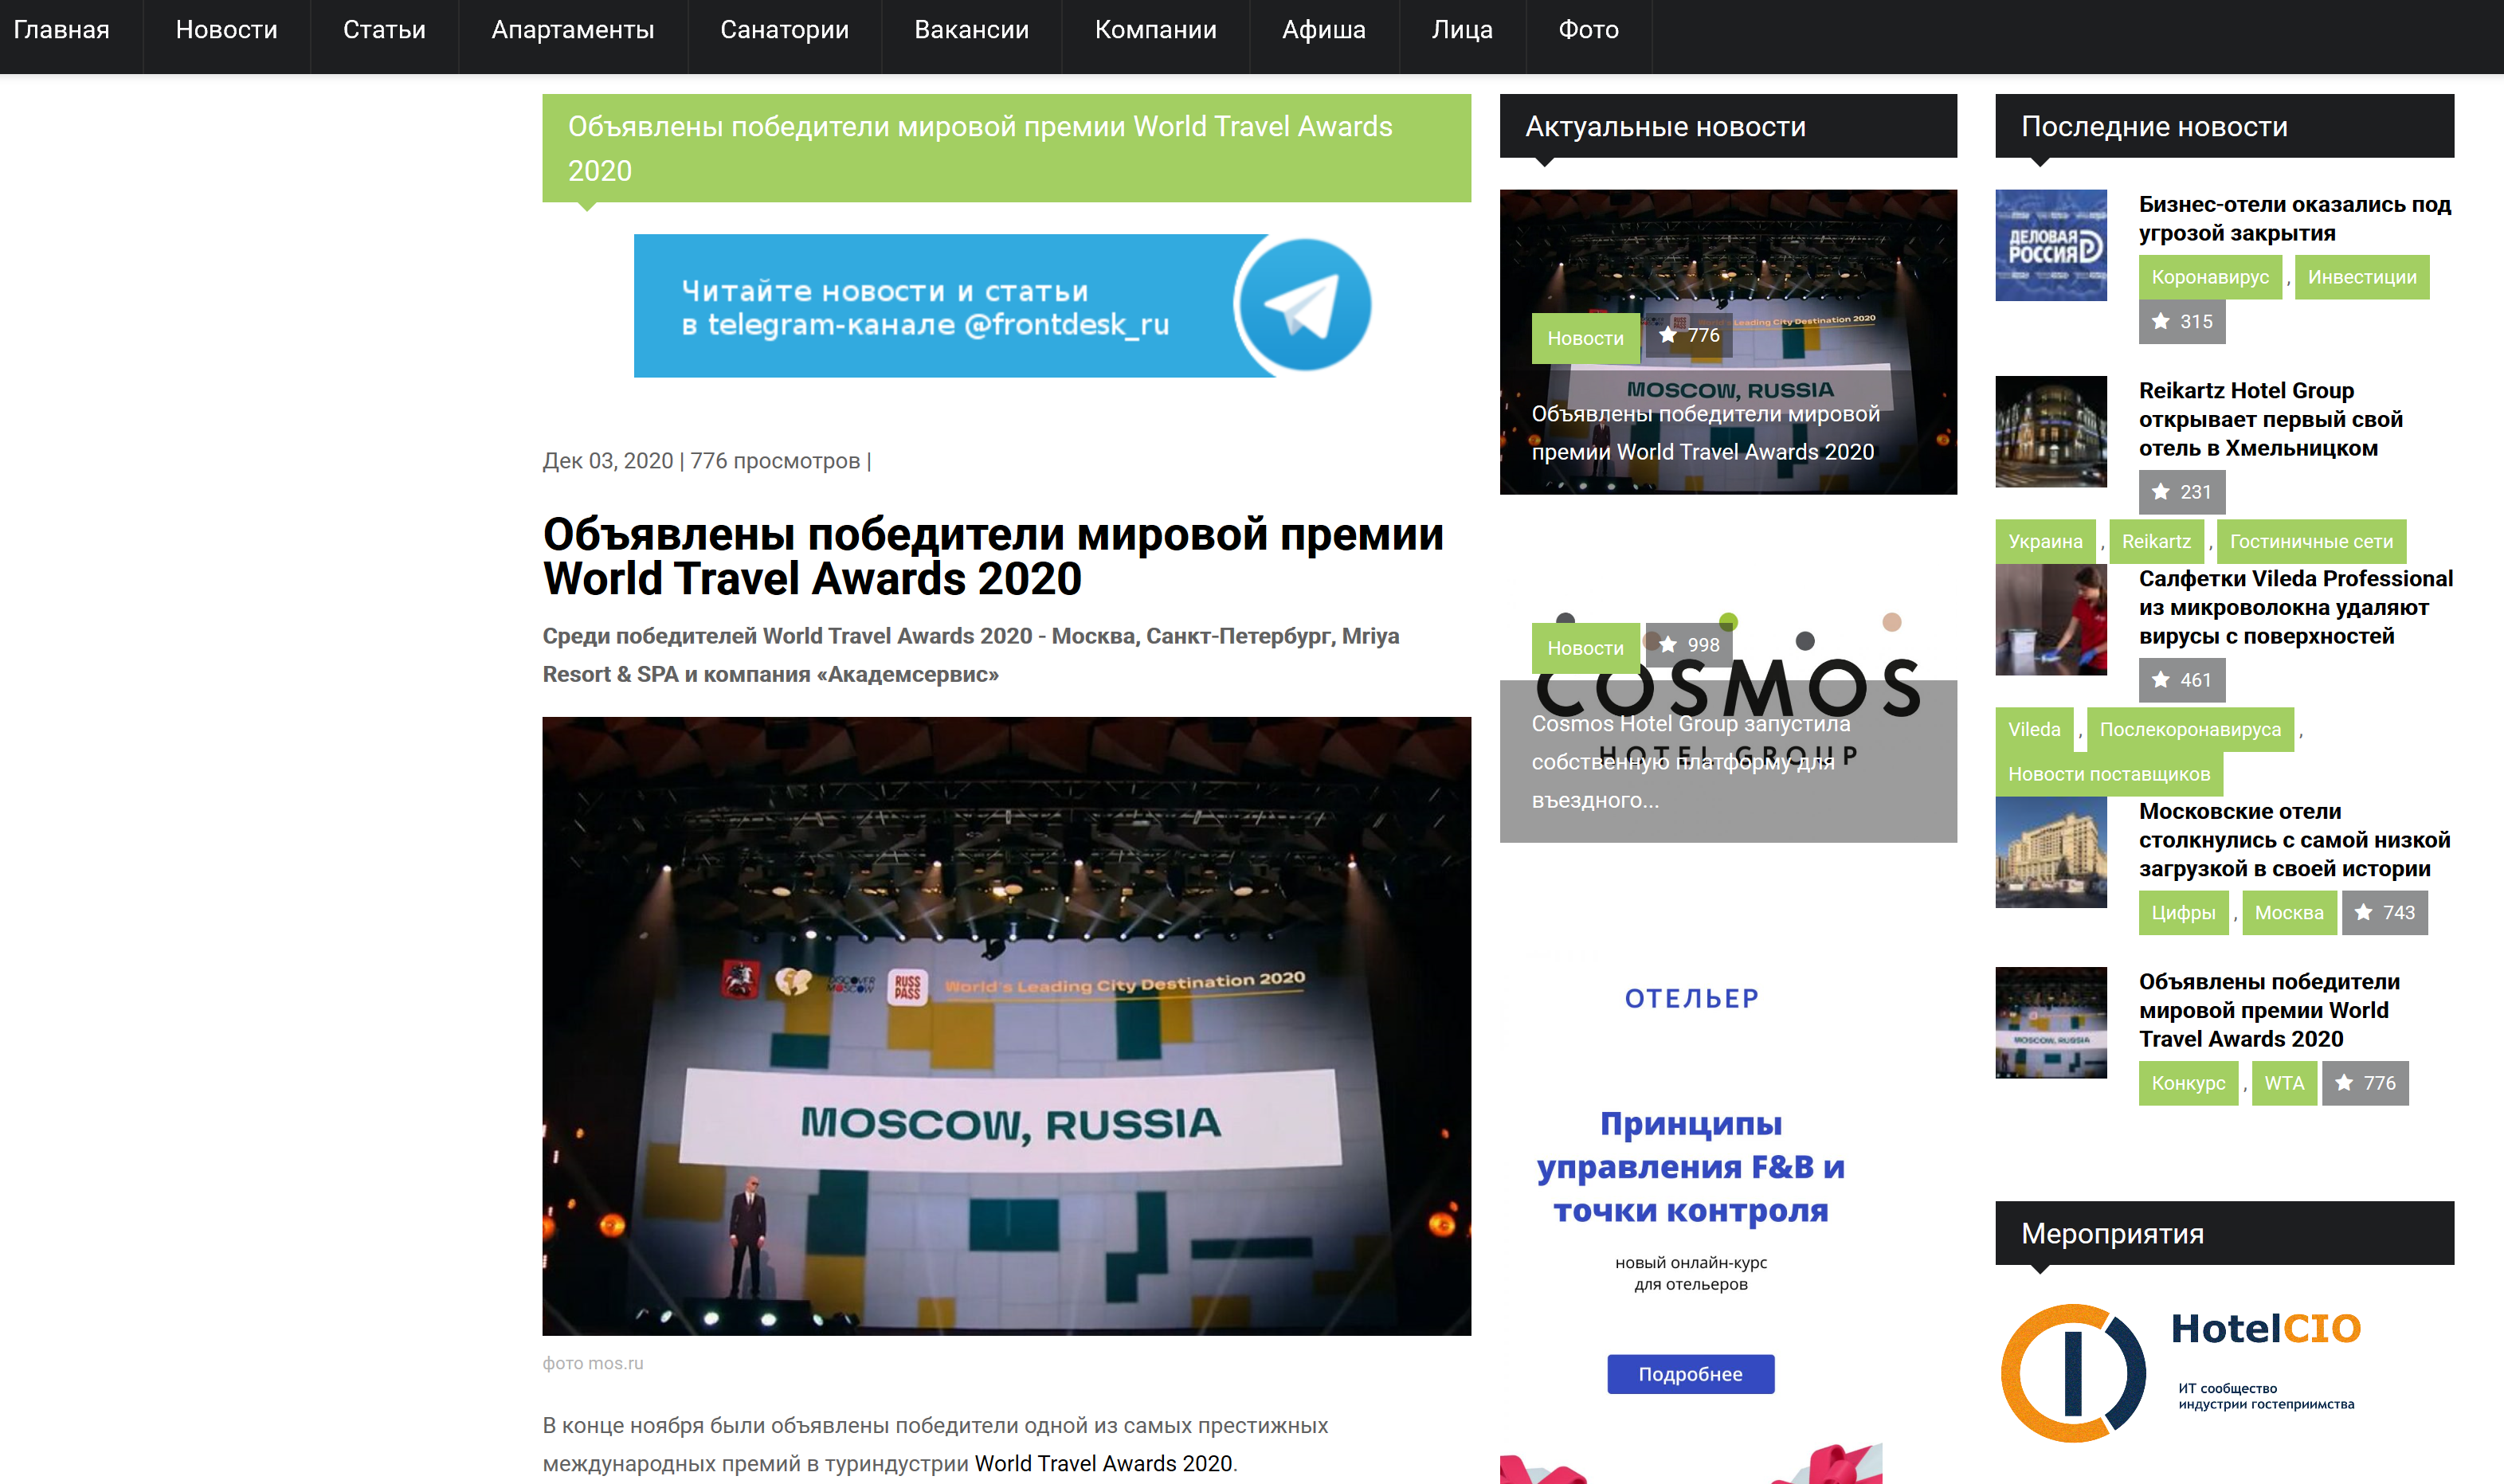 Сообщество профессионалов гостиничного бизнеса frontdesk.ru, www.frontdesk.ru, 03.12.2020